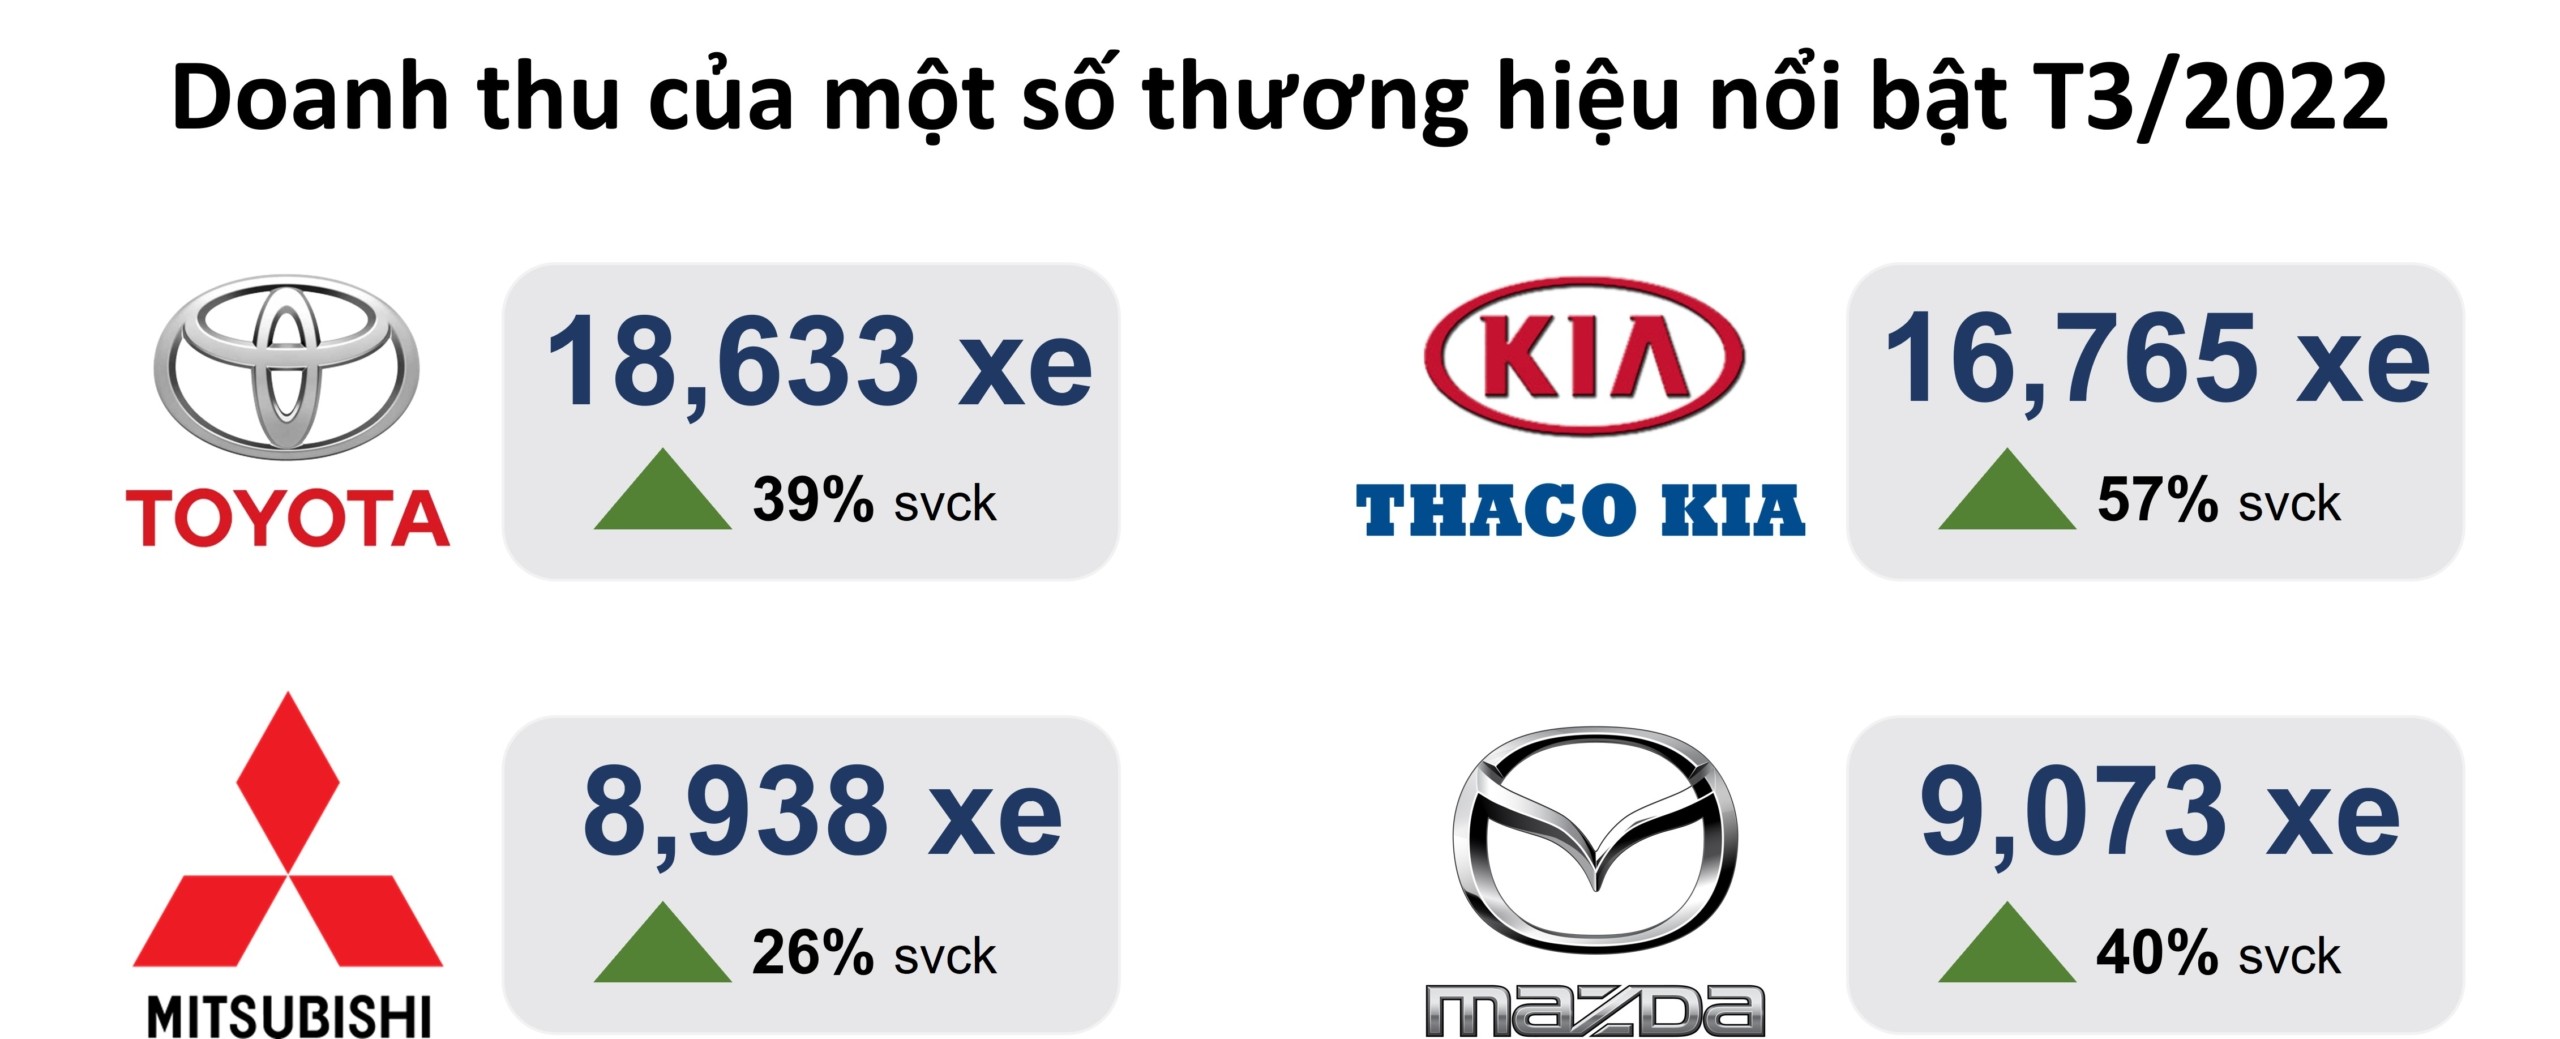 
Doanh thu của một số thương hiệu nước ngoài nổi bật trên thị trường Việt Nam
